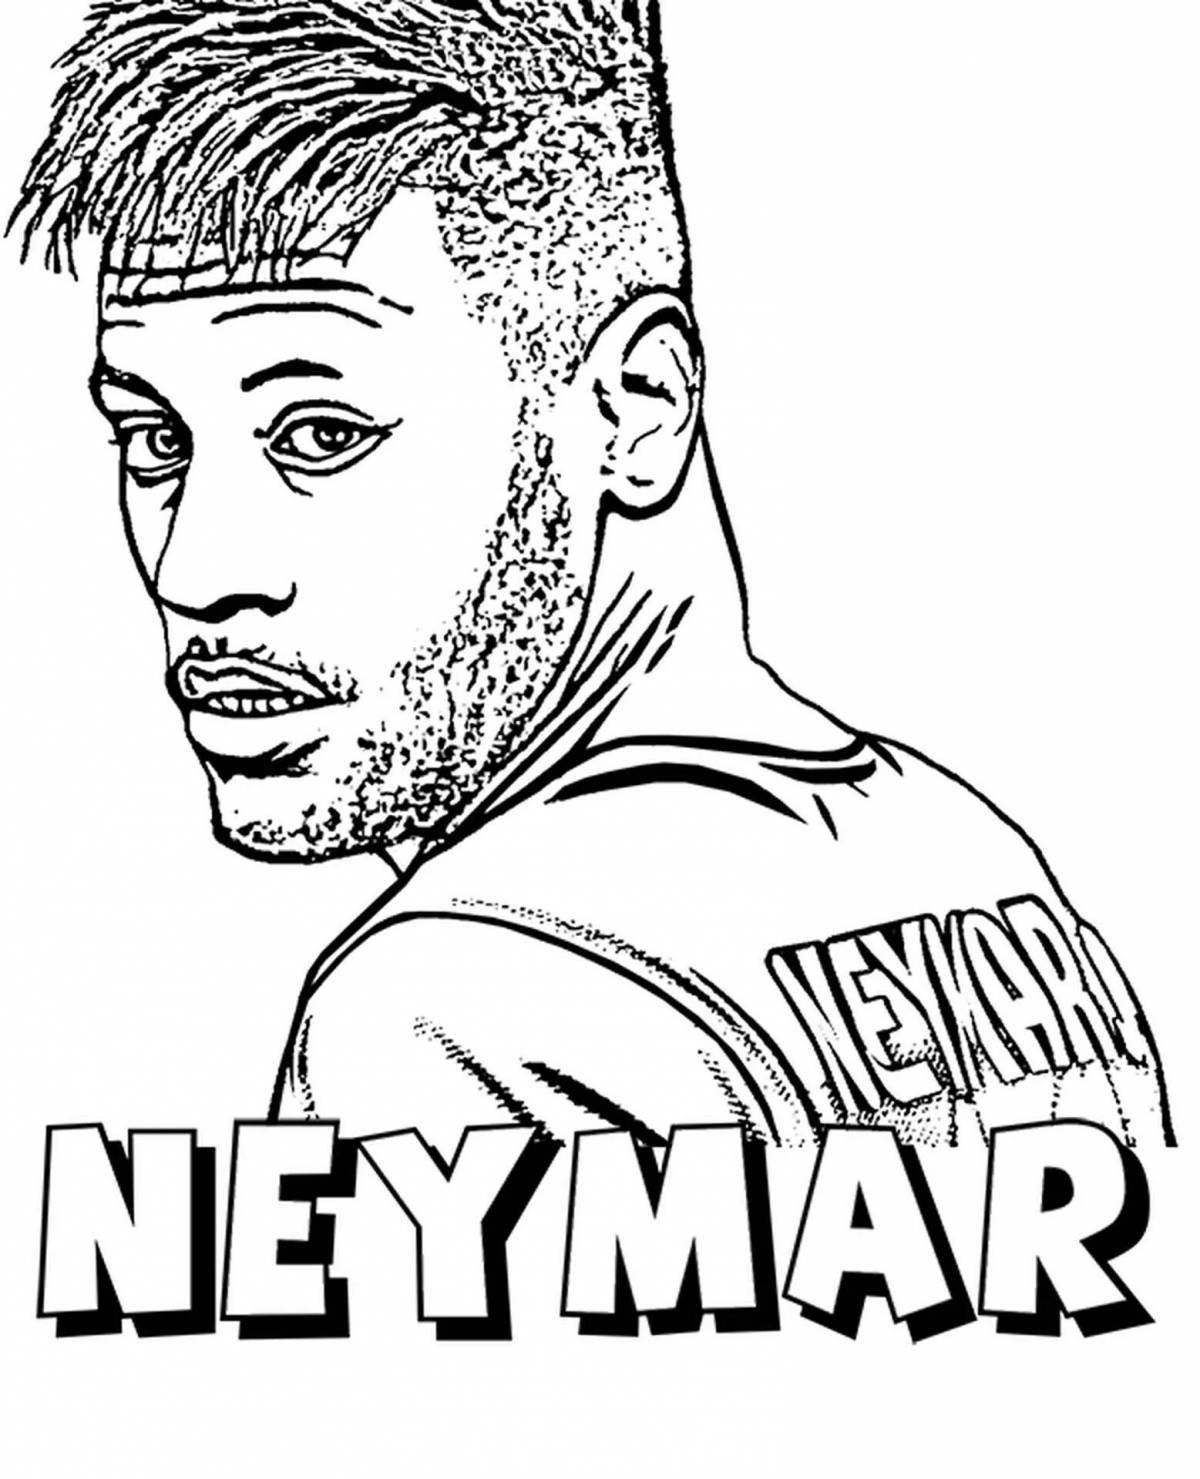 Neymar's bizarre coloring